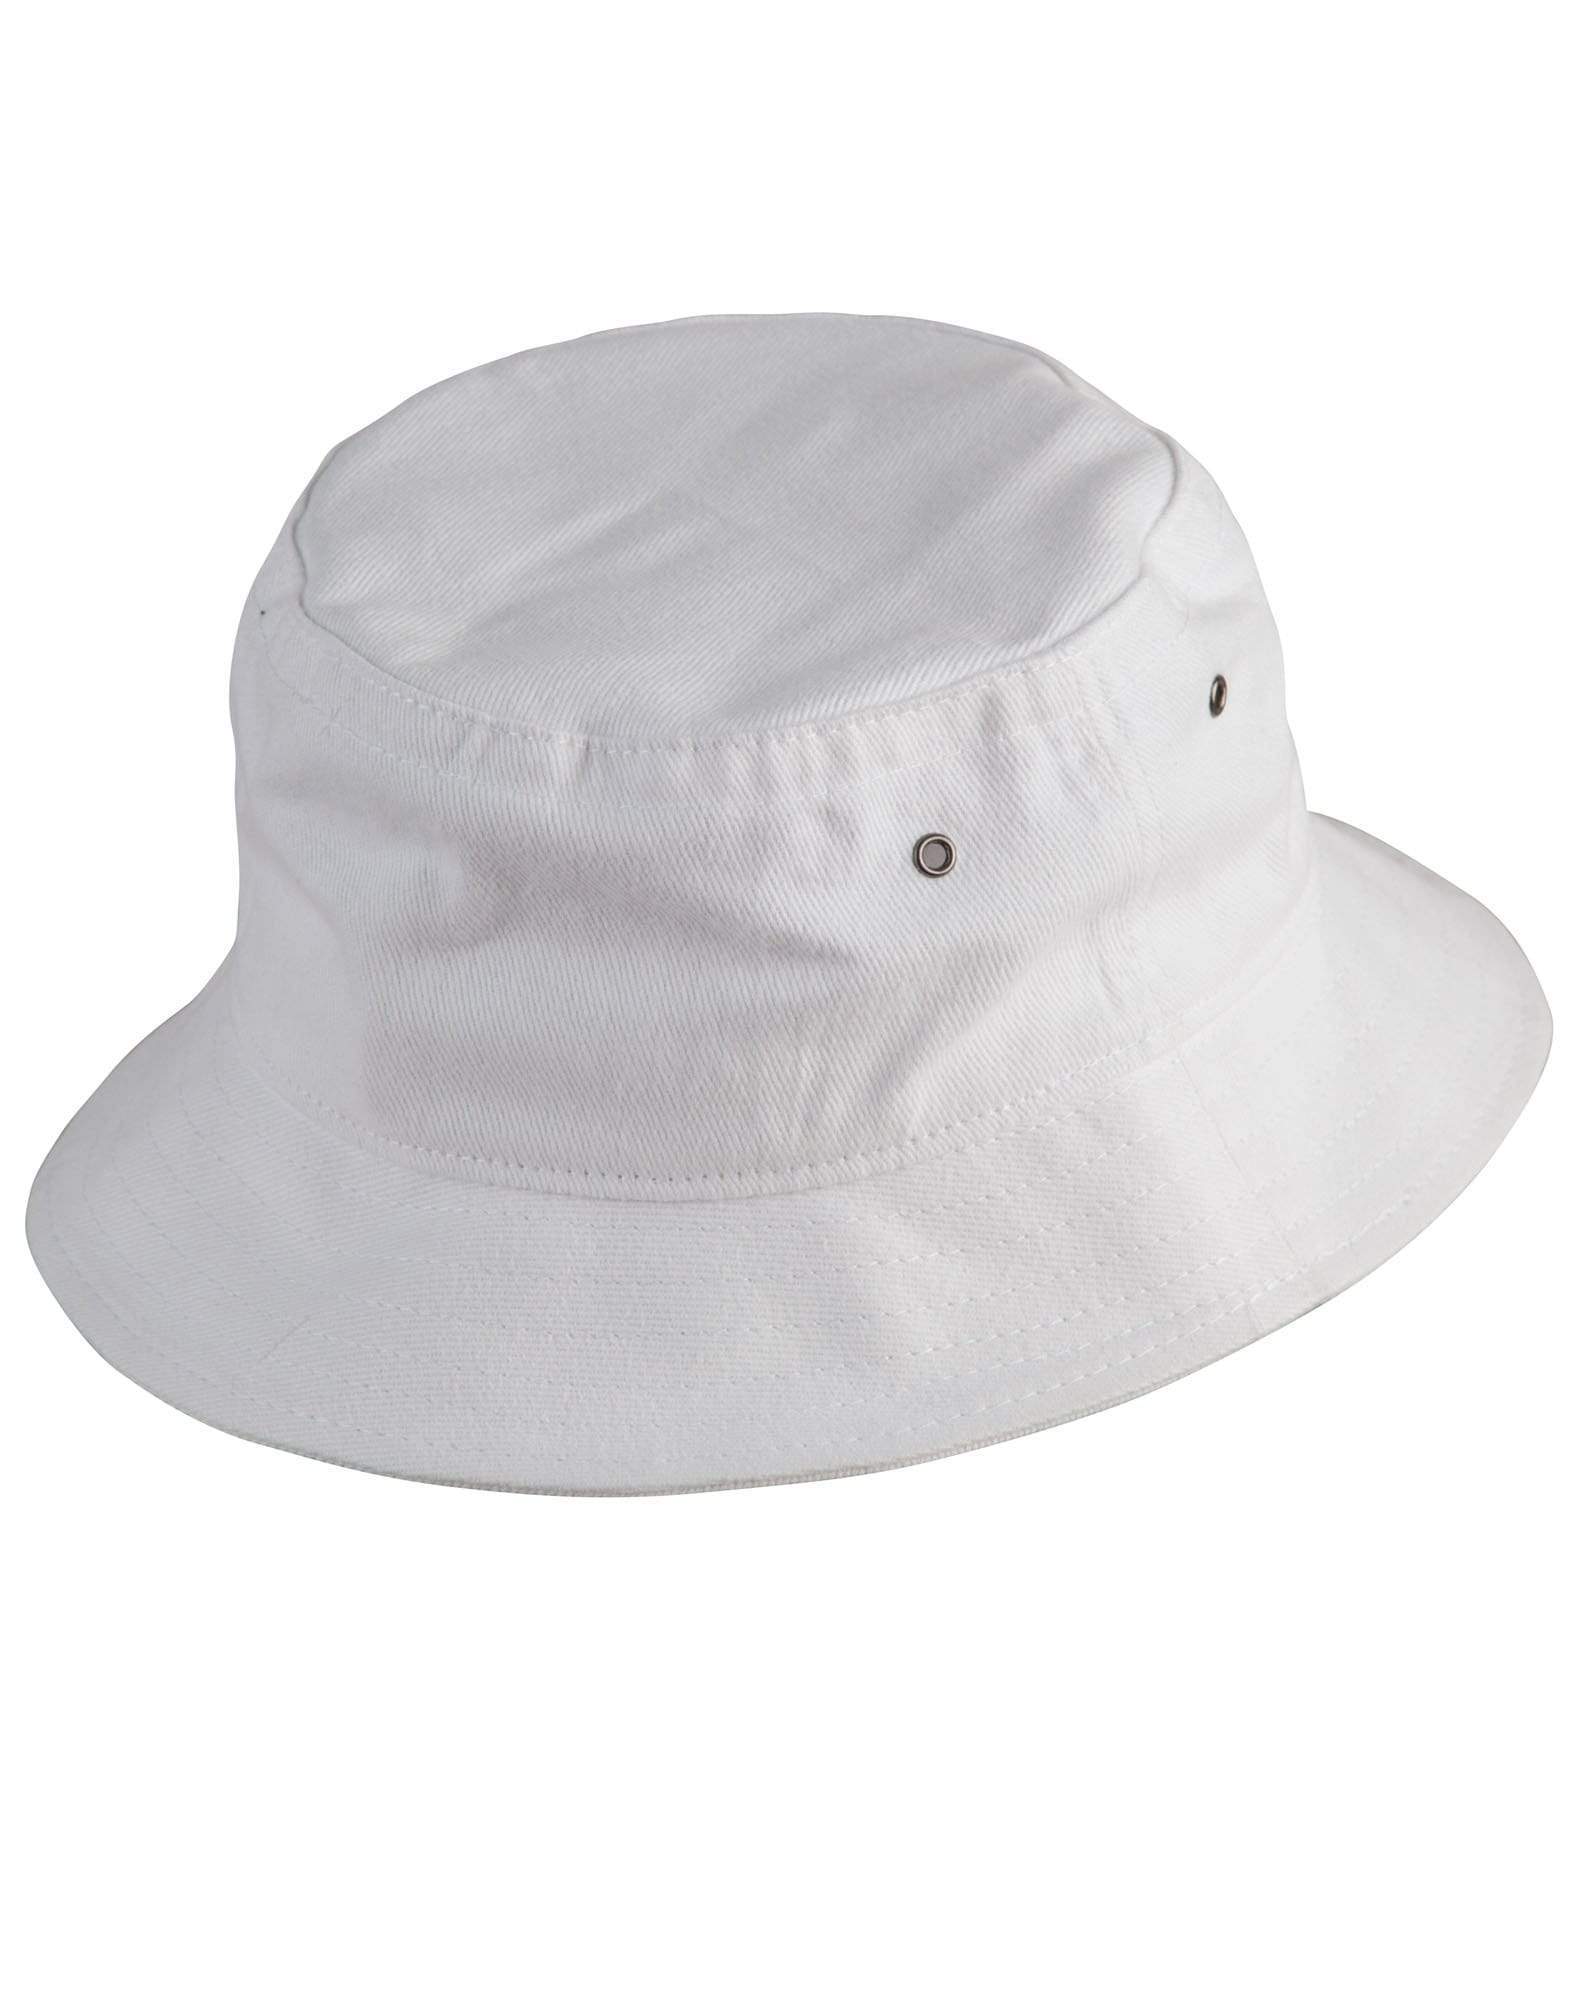 Winning Spirit Active Wear White / S/M Soft Washed Bucket Hat Ch29